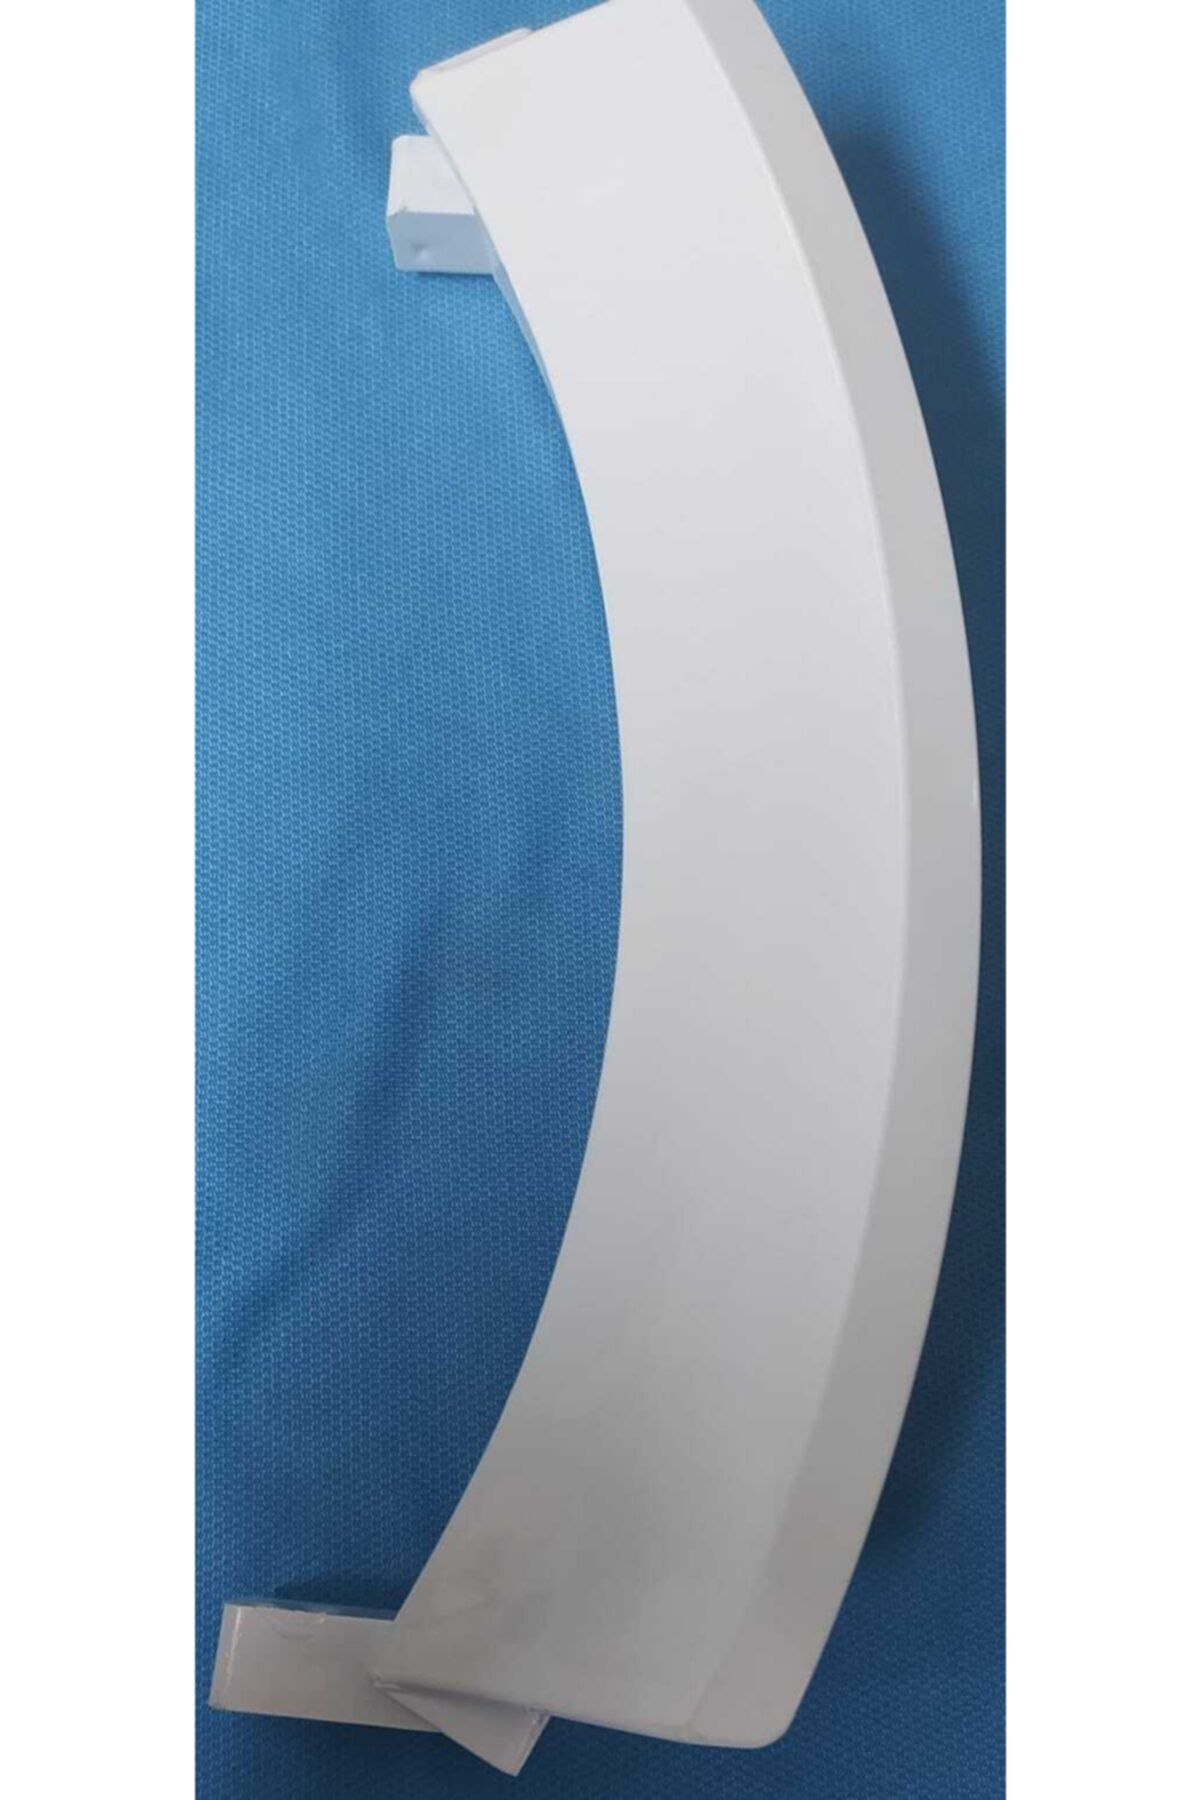 Bosch Logixx 8 Kg Çamaşır Makinesi Kapak Mandalı Beyaz Renk